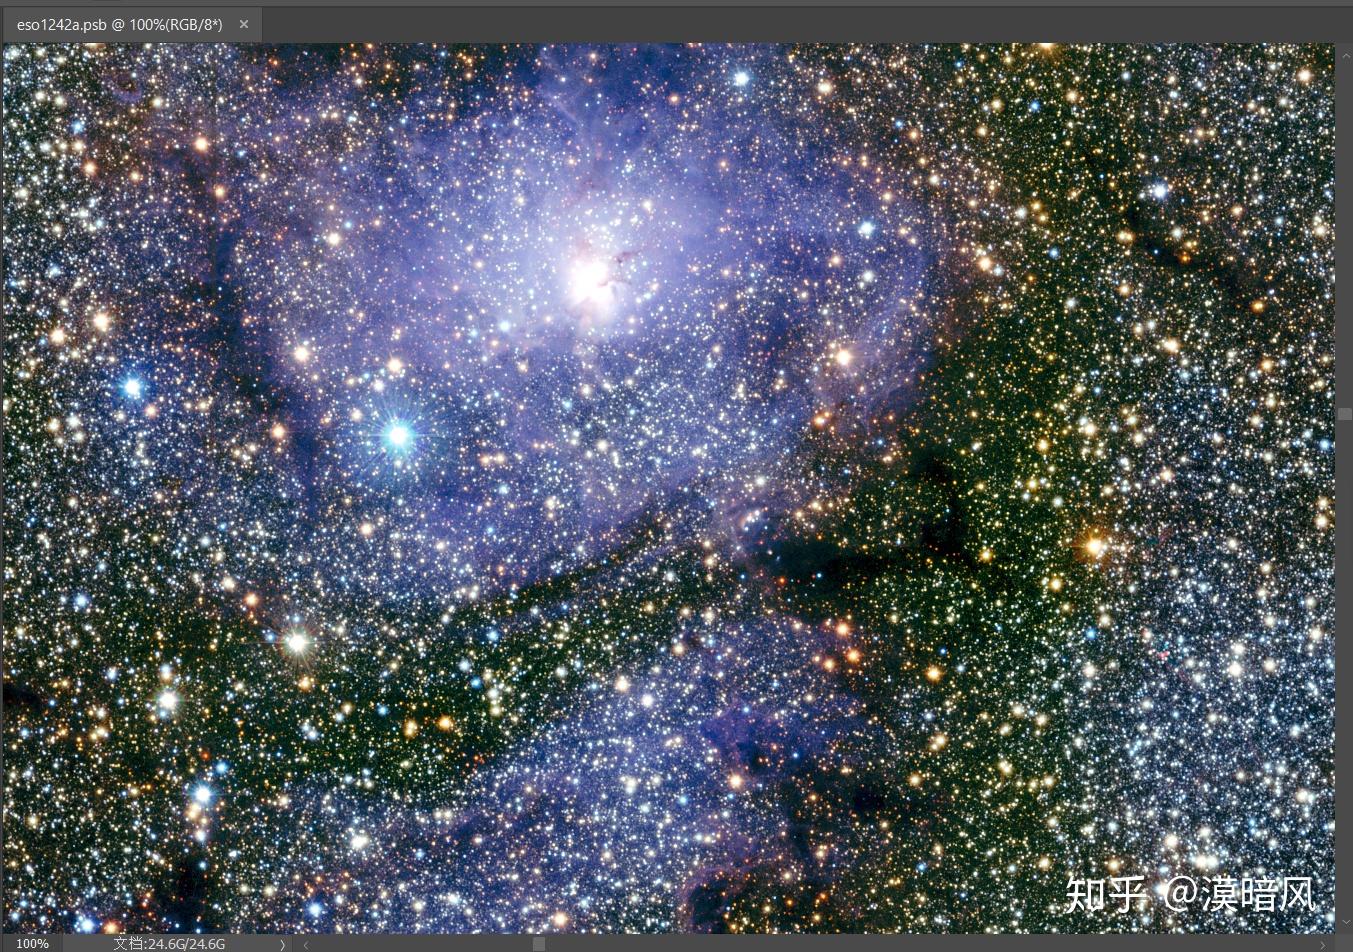 银河系全景图 - wuwei1101的日志 - 网易博客